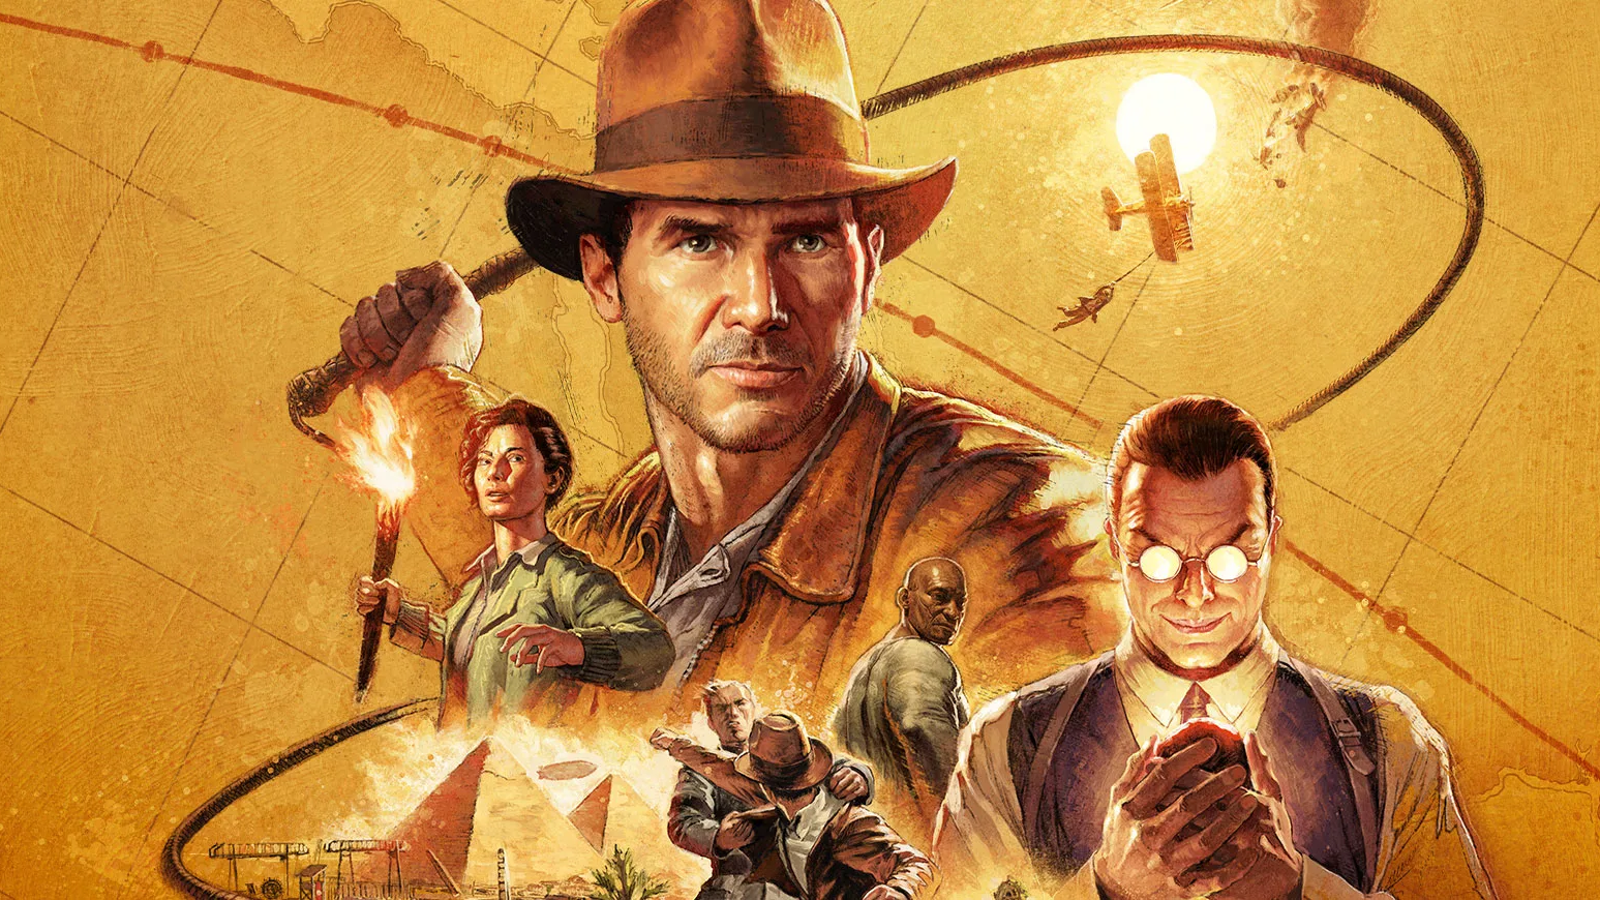 Best Indiana Jones Games On Nintendo Platforms